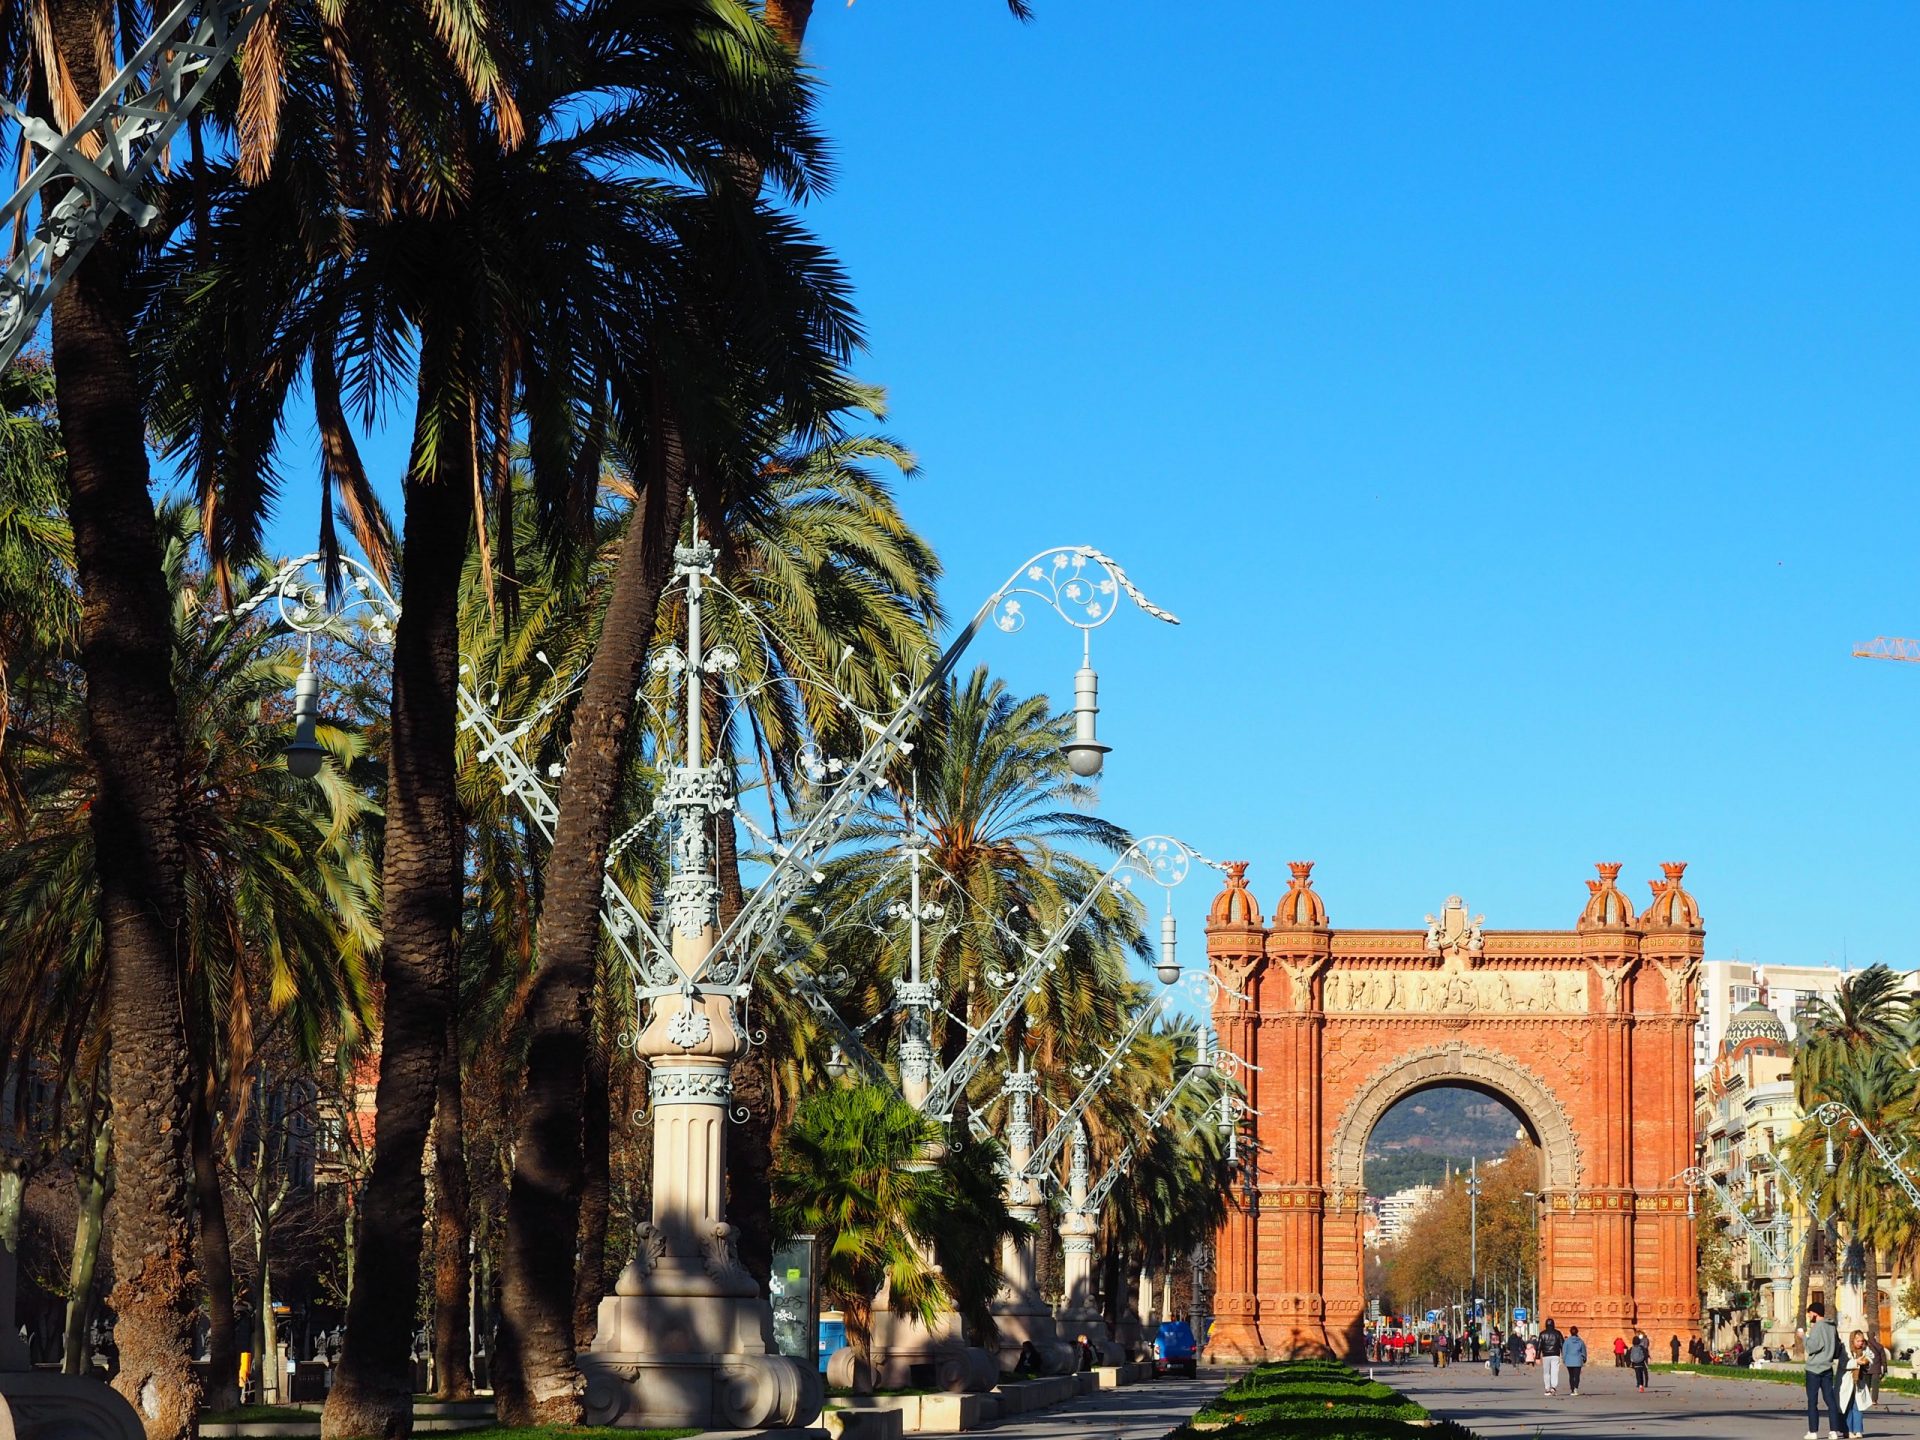 La vista durante i tour virtuali di Barcellona con l'Arco di Trionfo. Barri gotic